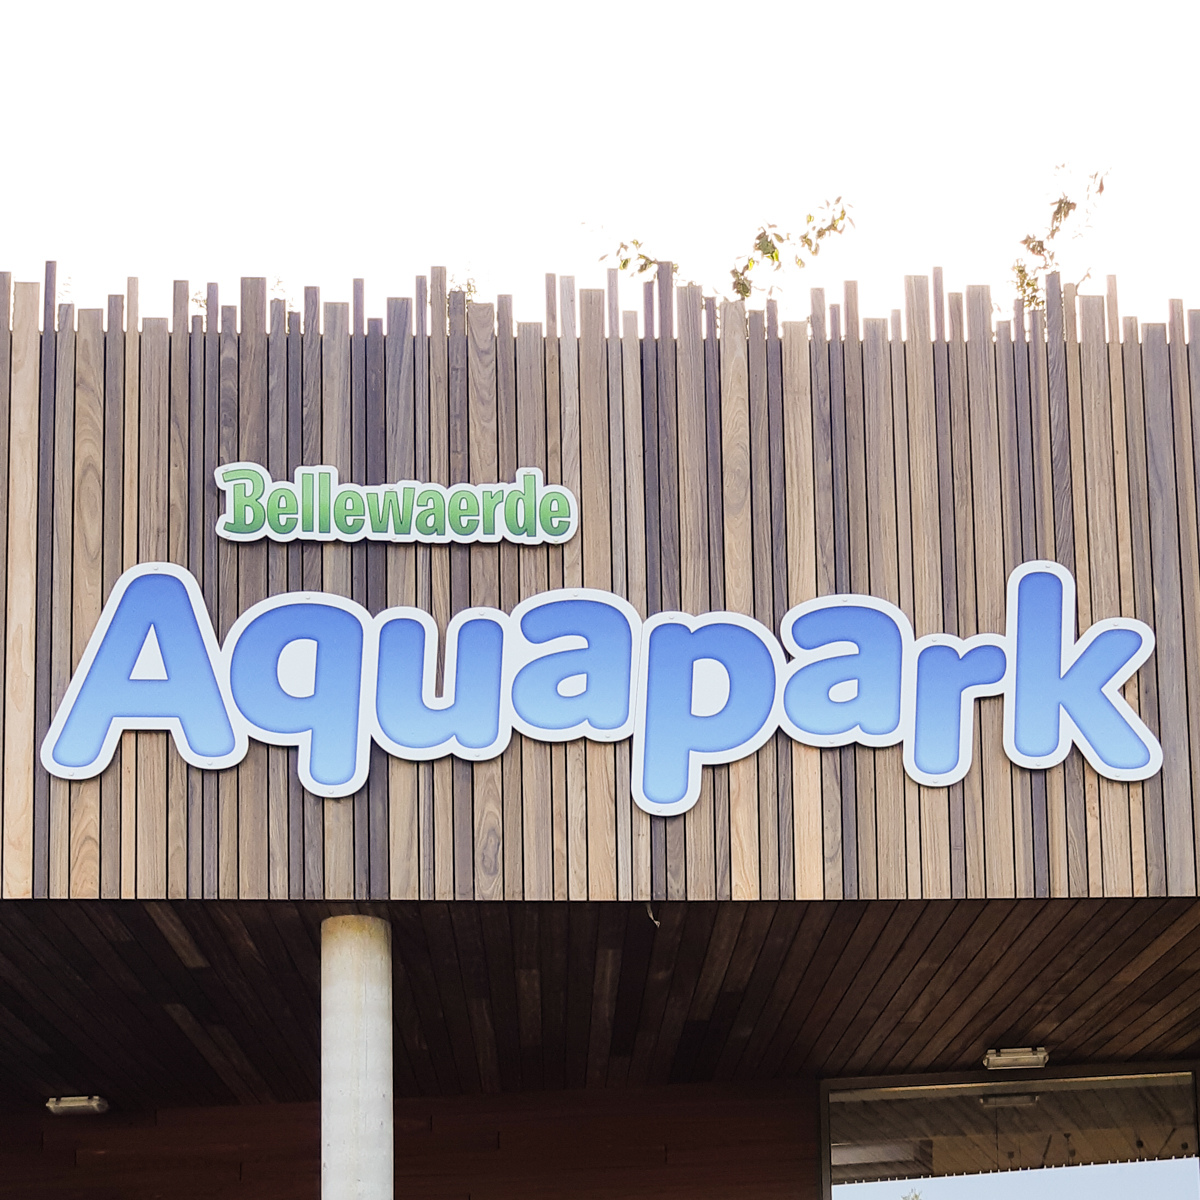 Aquapark Bellewarde veel plezier voor het hele gezin